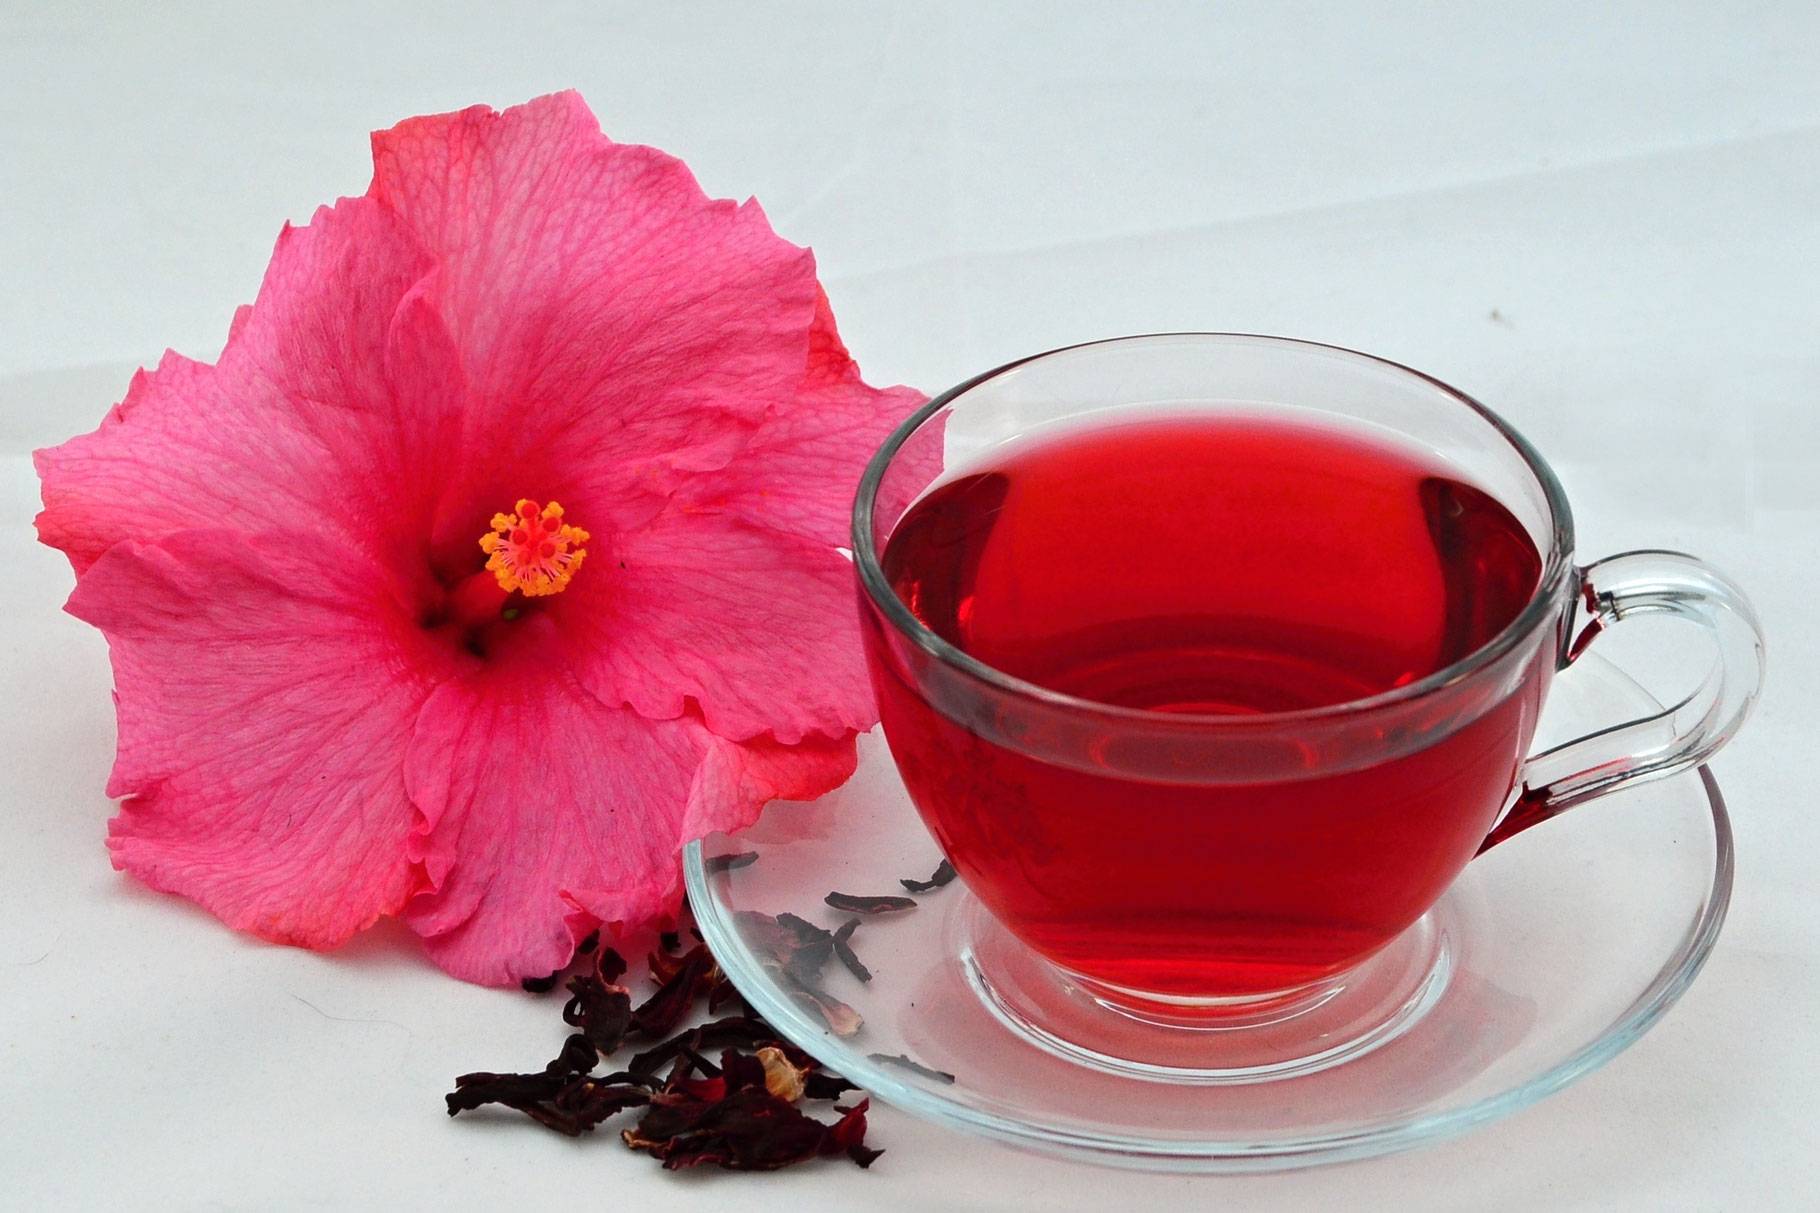 Чай из цветов гибискуса: полезные свойства и вред selo.guru — интернет портал о сельском хозяйстве